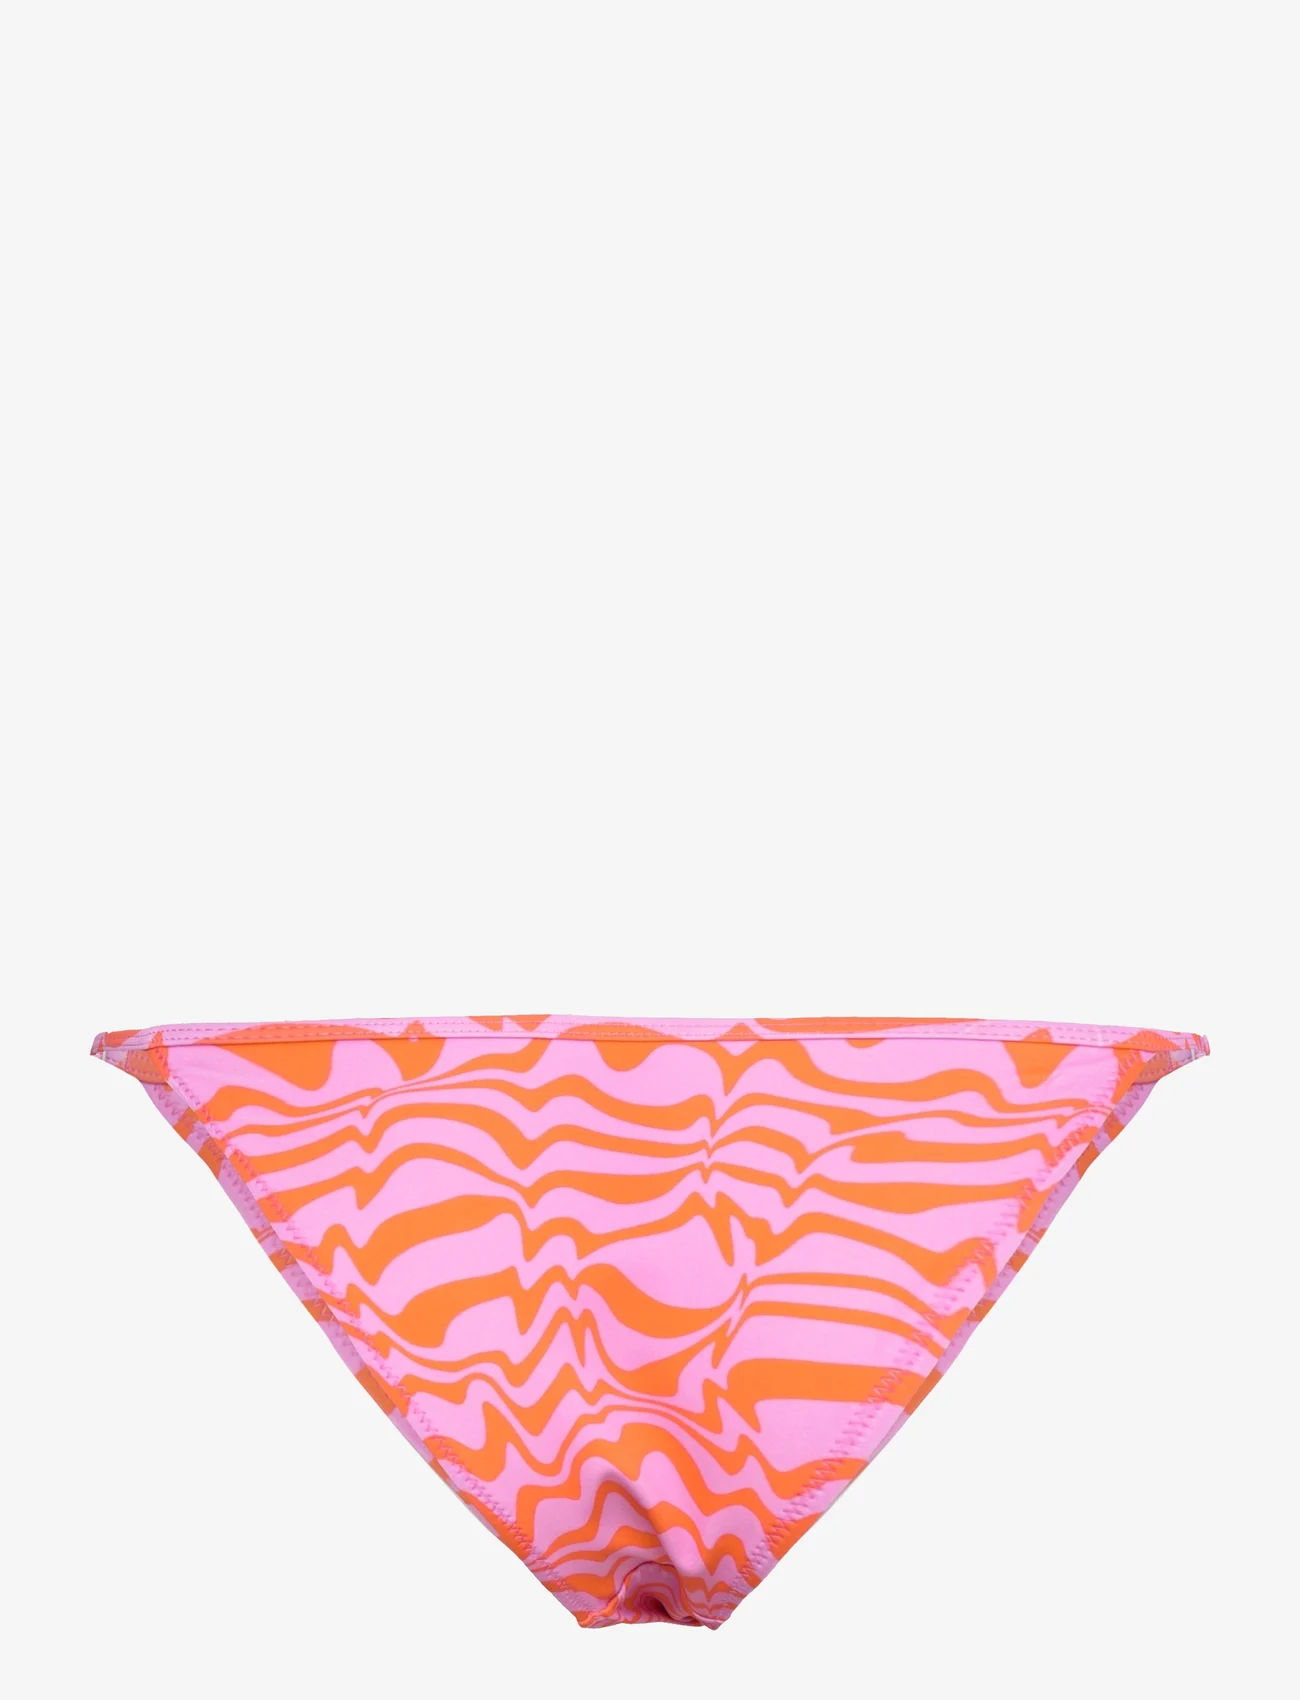 Envii - ENJELLYFISH SWIM PANTIES AOP 7016 - bikini-slips - wobbely pink - 1